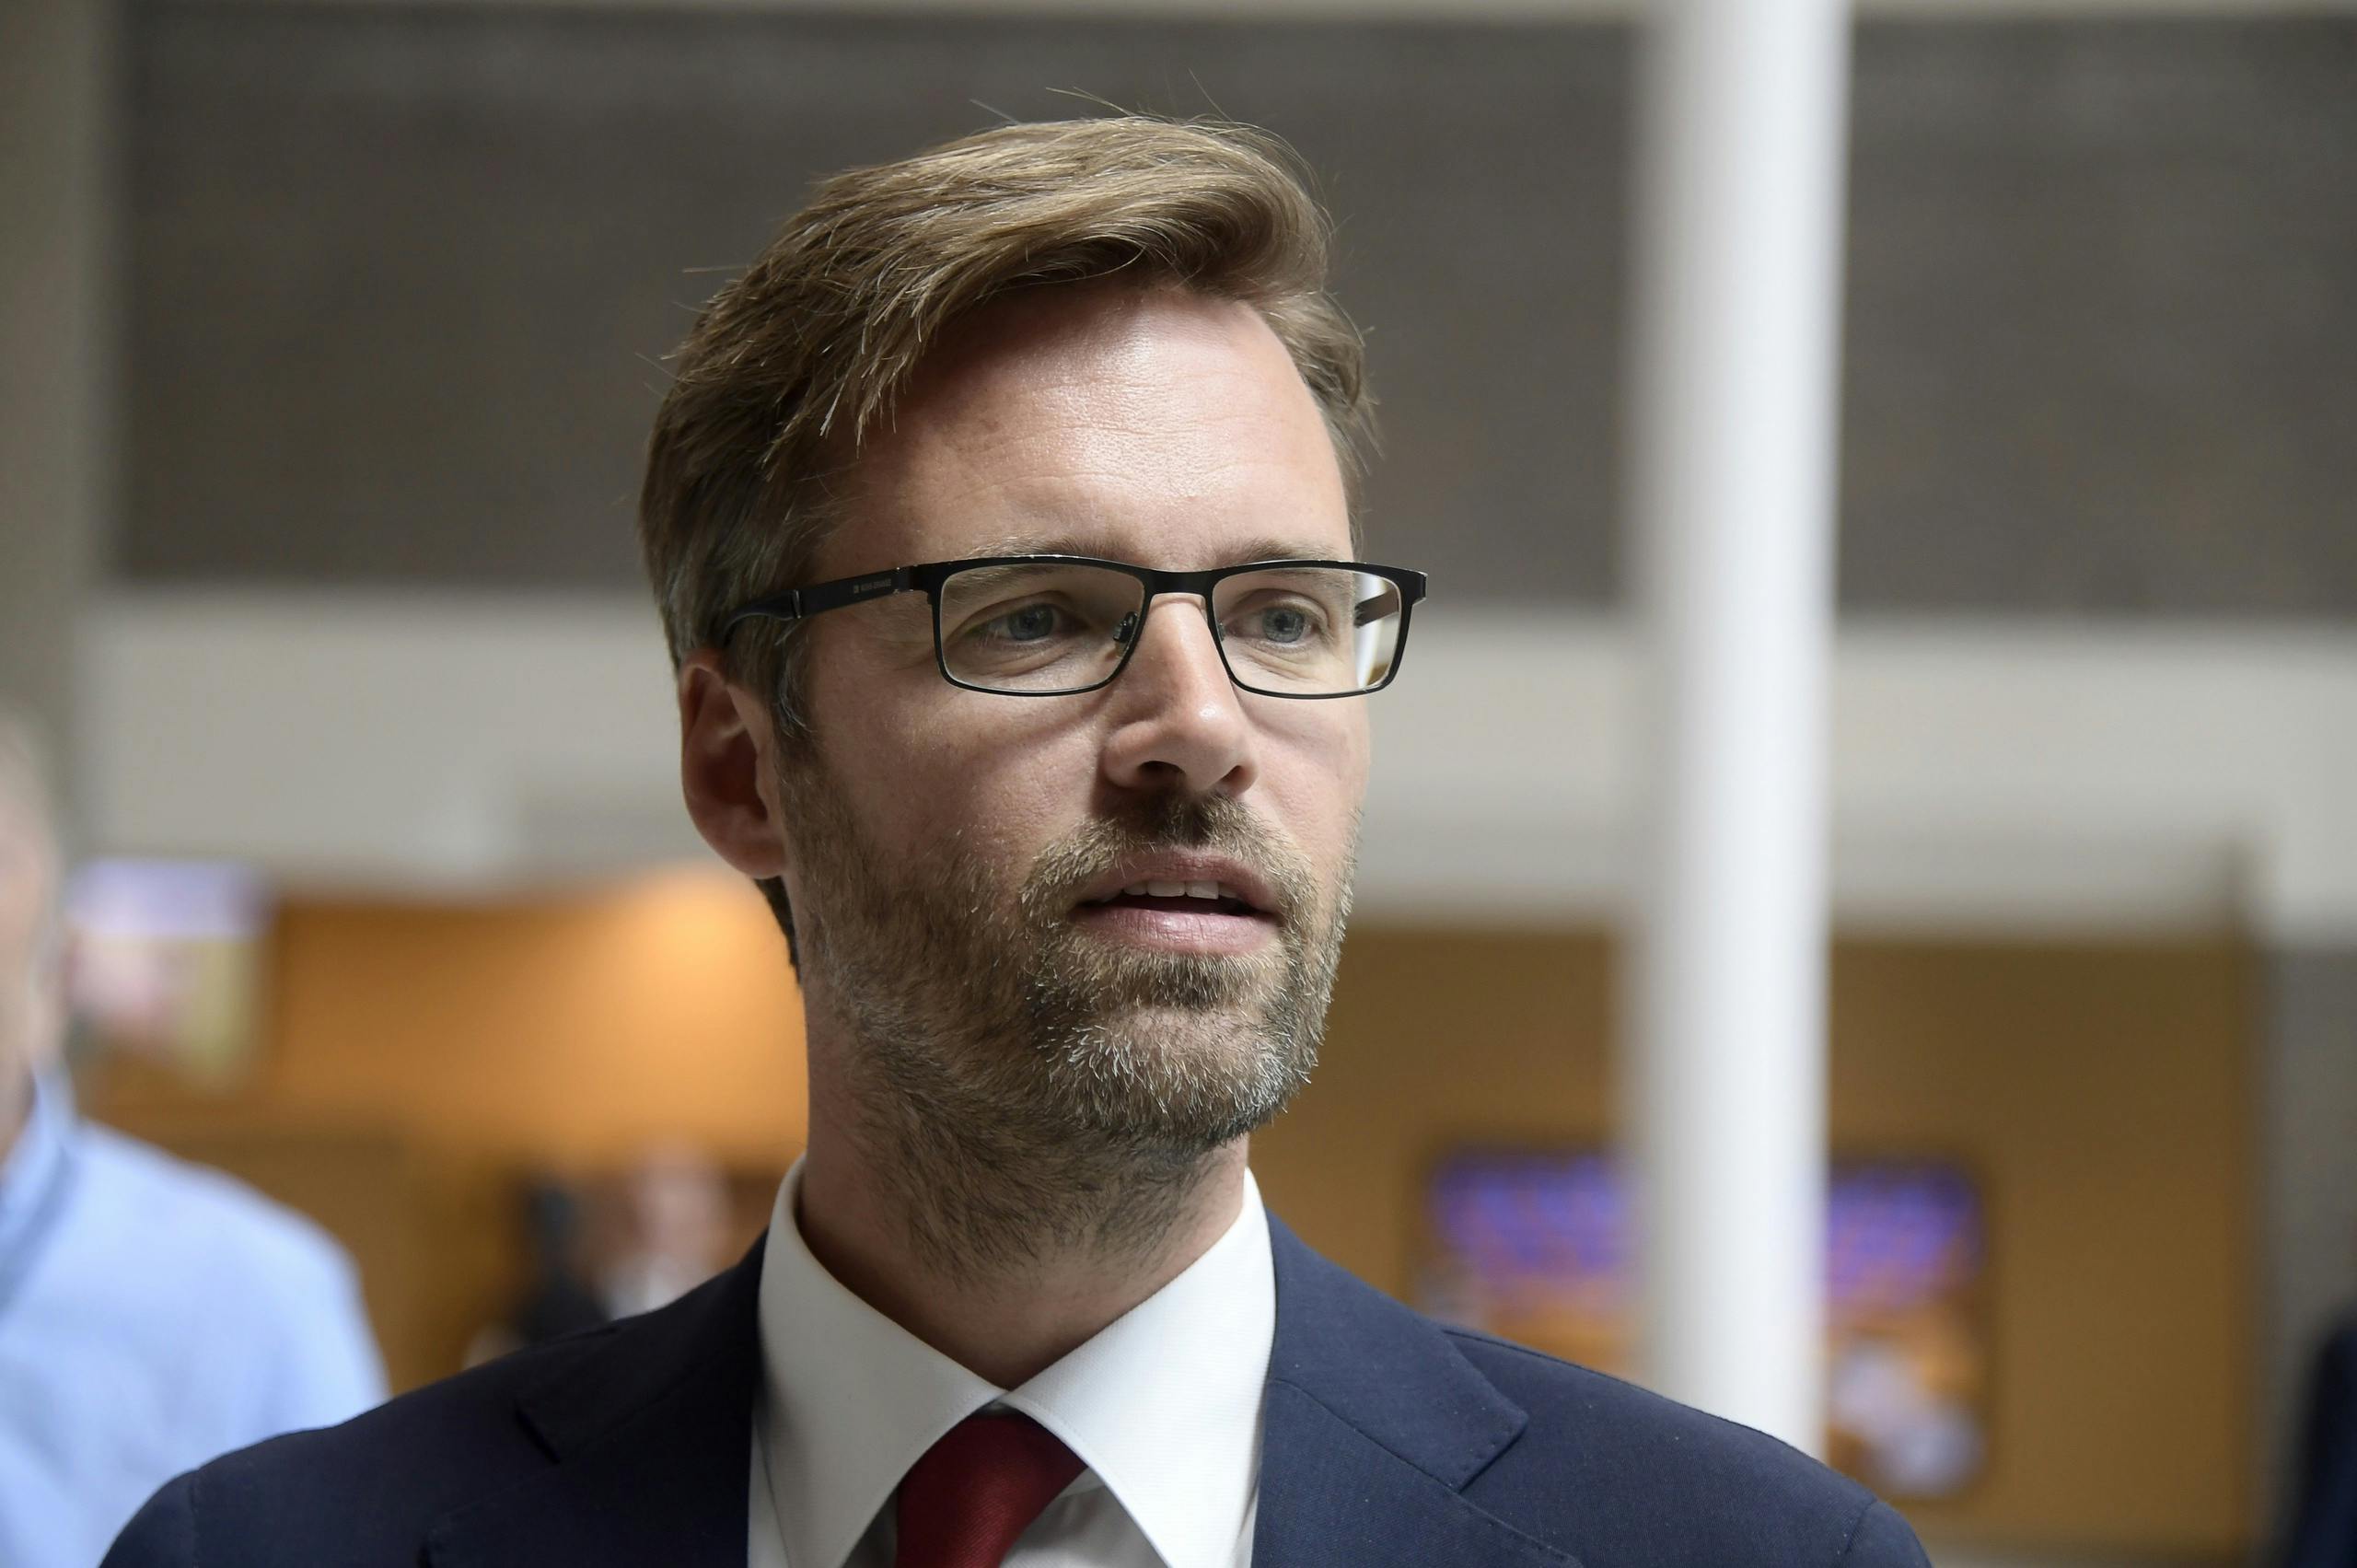 D66-Mitglied Sjoerdsma will russische Touristen fernhalten